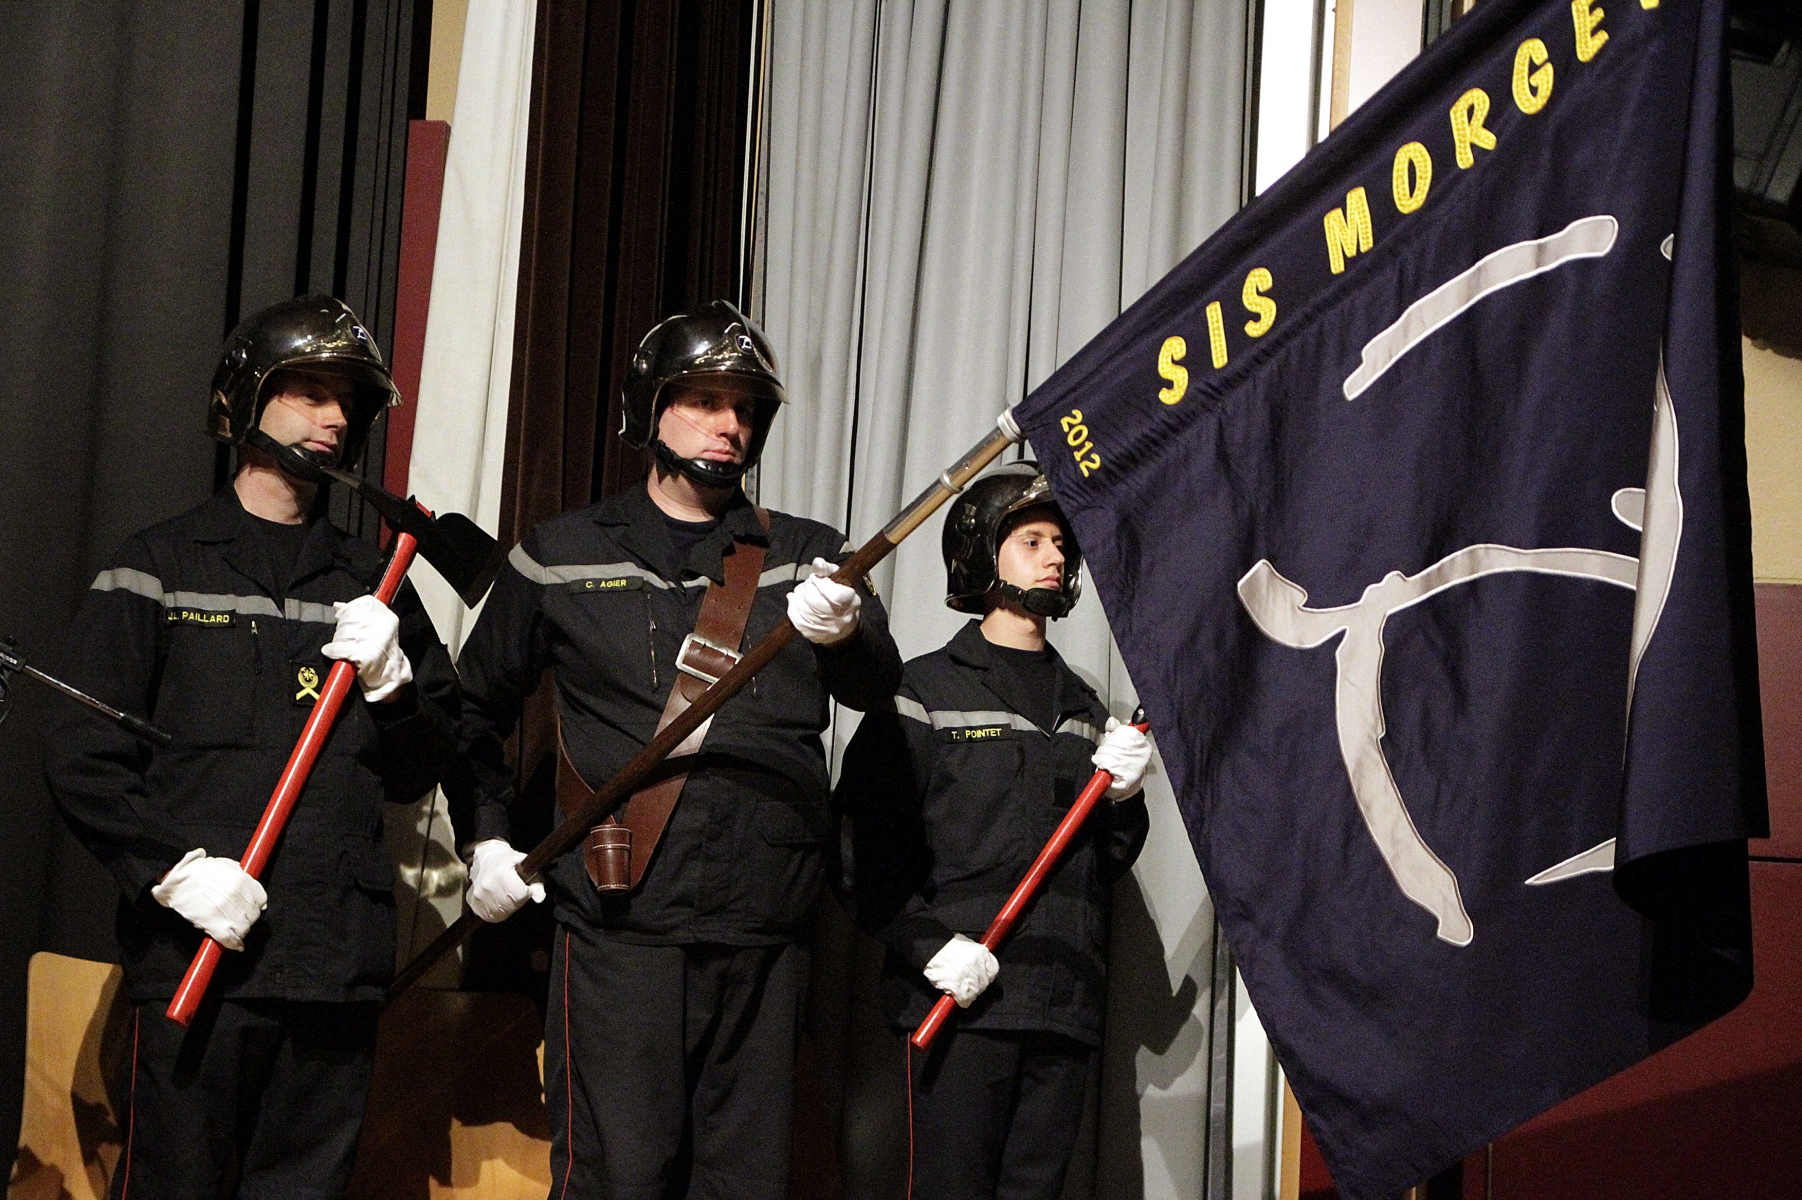 La bannière a solennellement été dévoilée mercredi soir lors de la cérémonie de promotions internes au sein du SIS Morget.